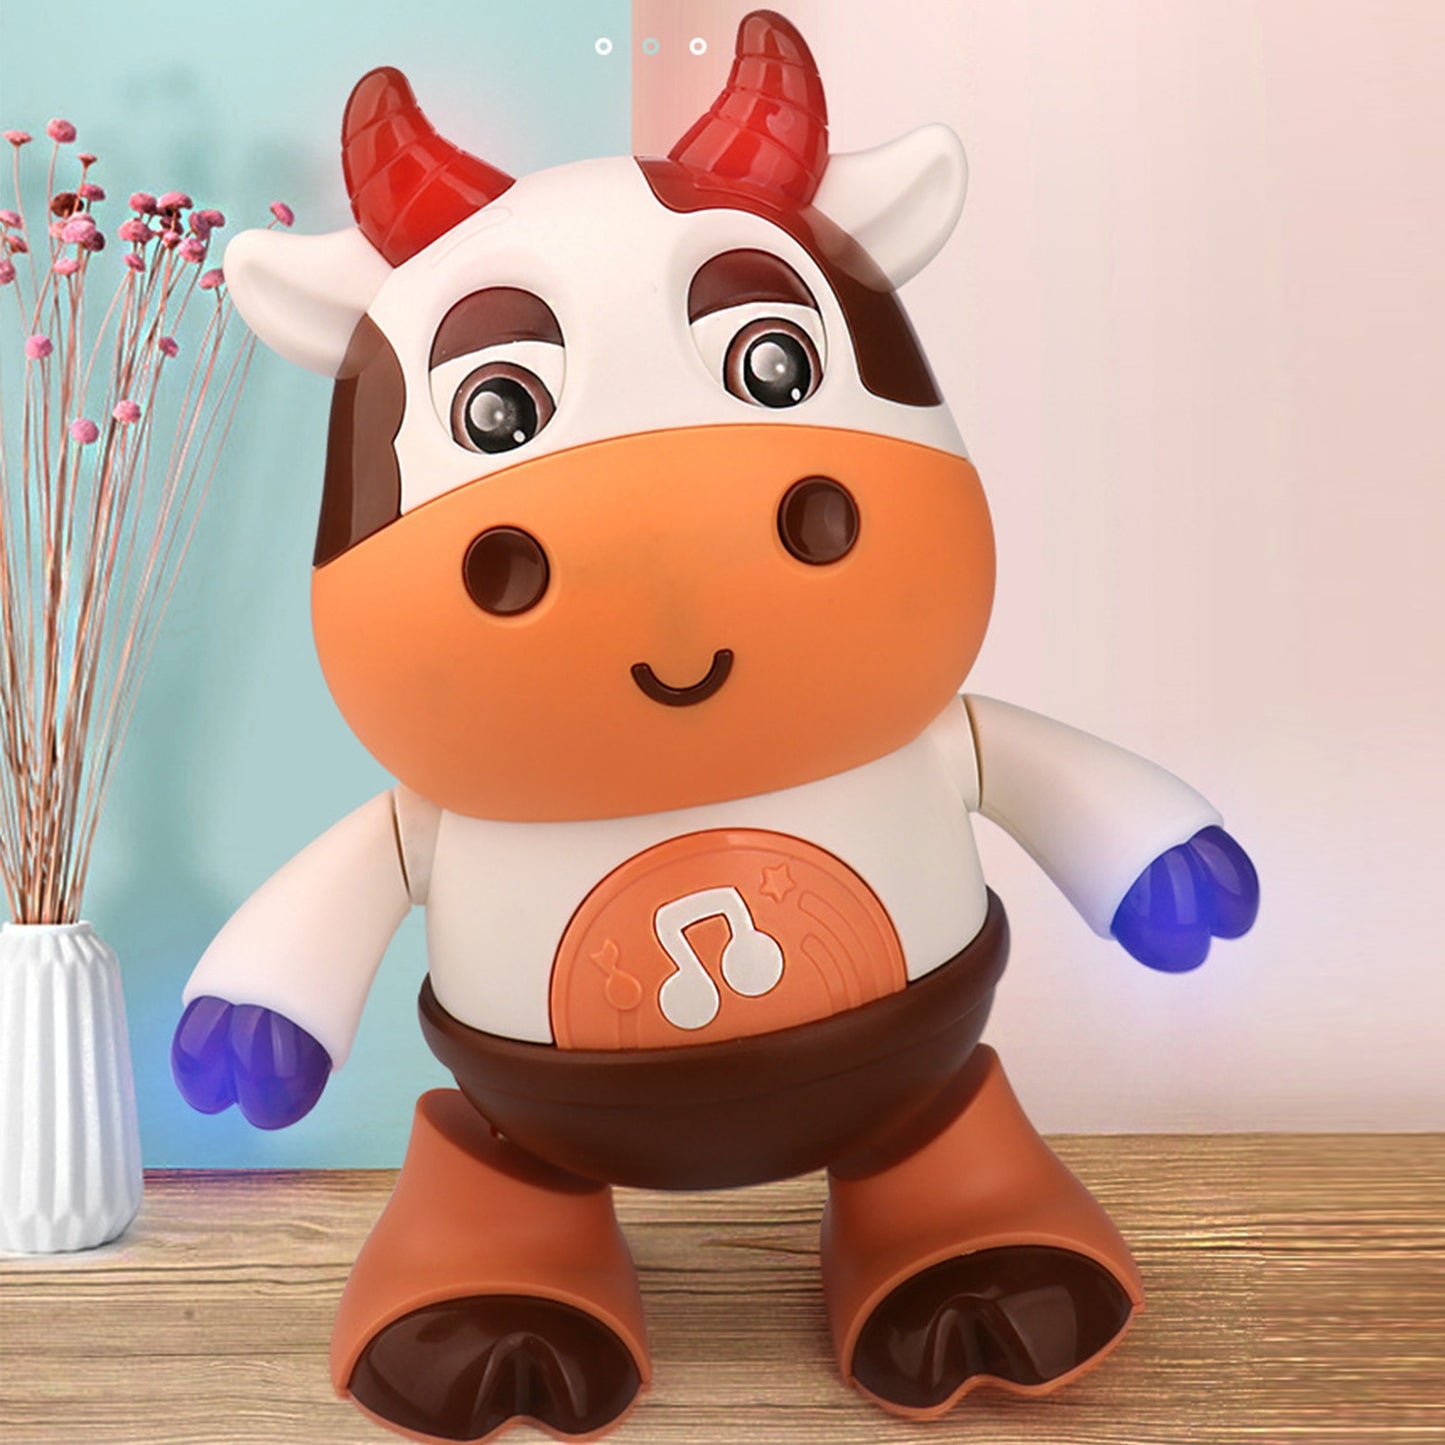 MoohMooh™ | Dé dansende koe waar ieder kind mee wil spelen!